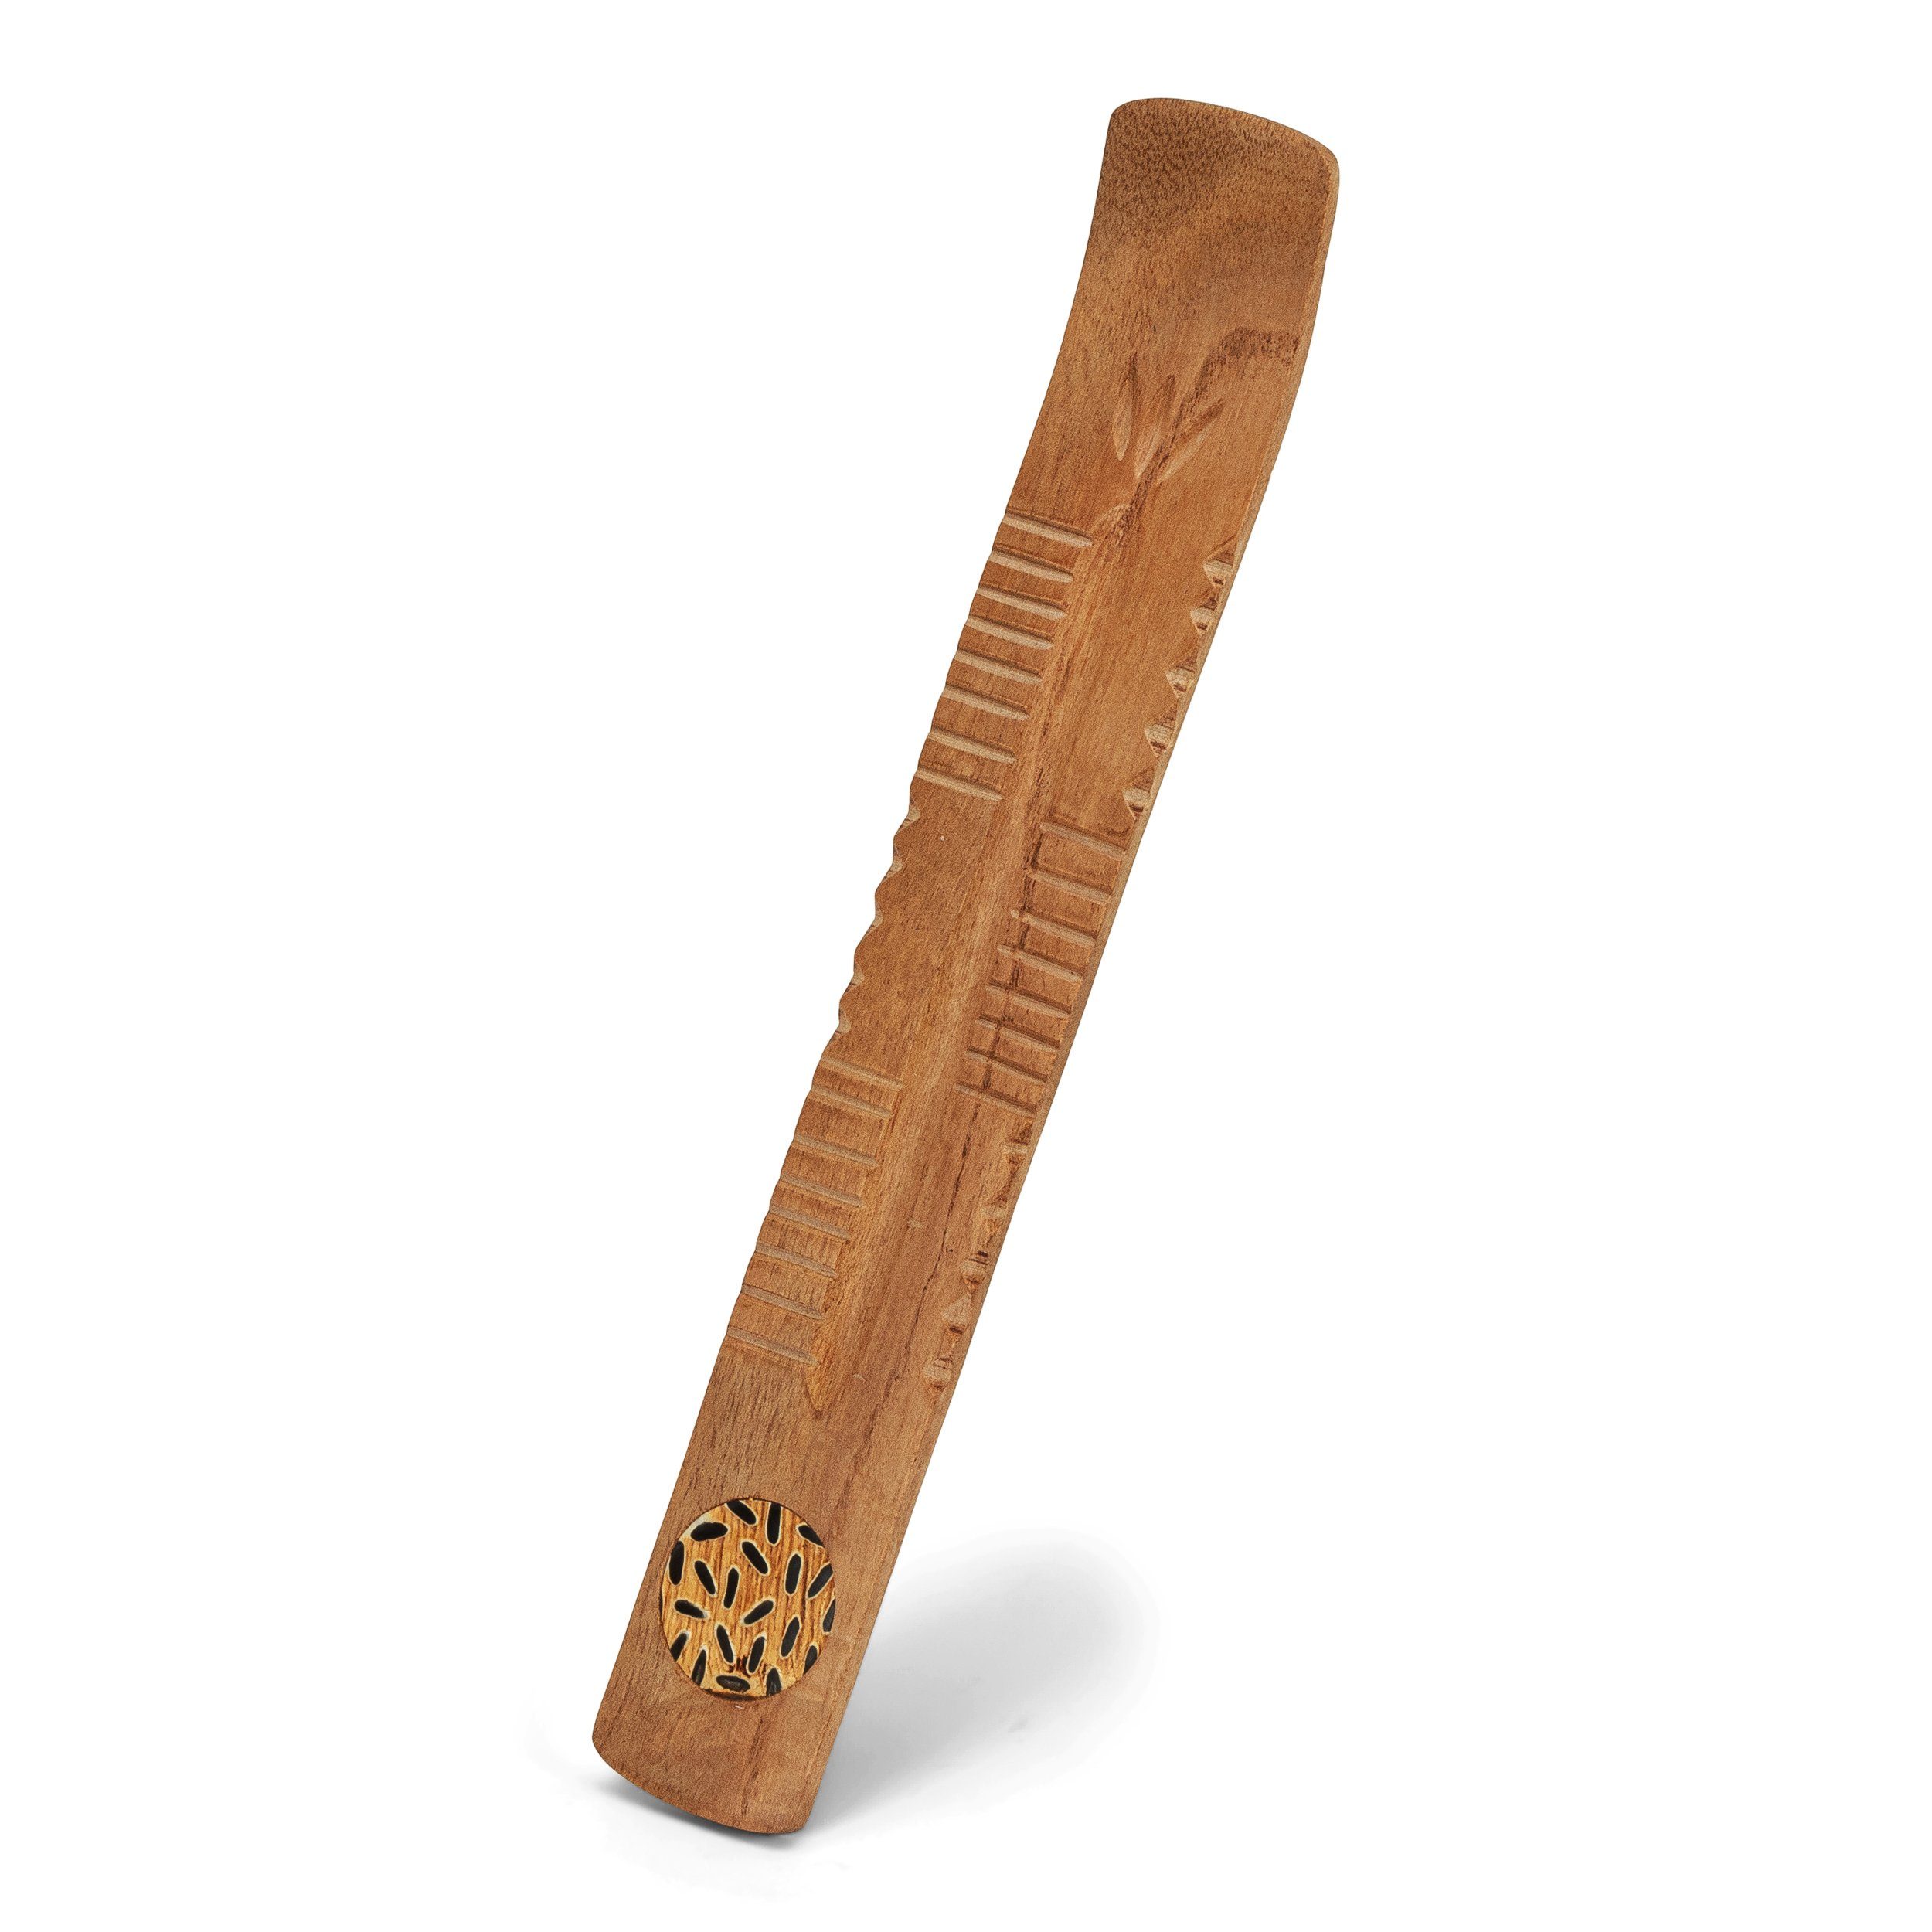 x 26 Räucherstäbchen-Halter Holz Echt aus NKlaus bra, Räucherstäbchenhalter Handarbeit 4,2cm